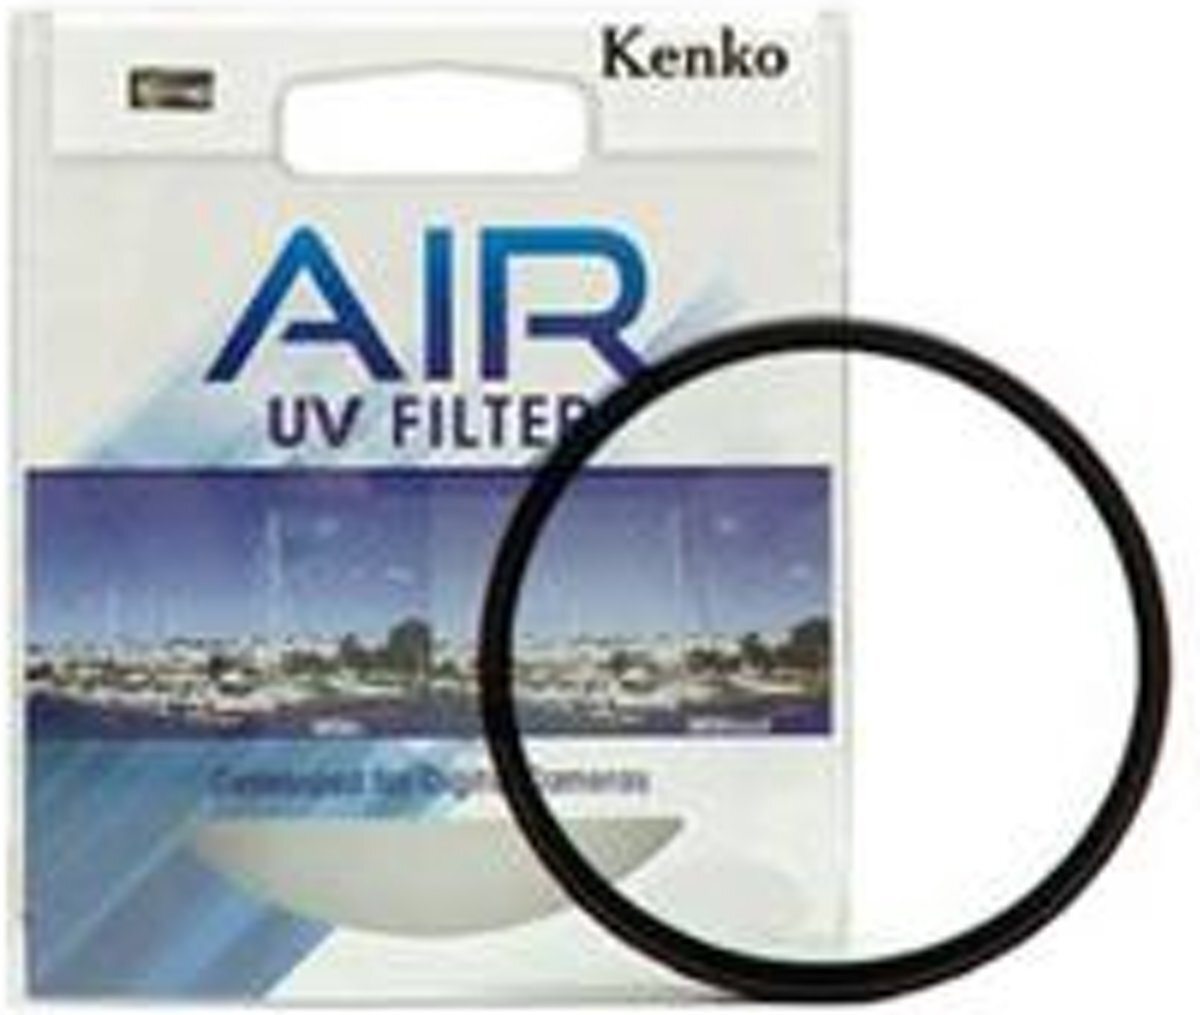 Kenko Air UV MC 55mm